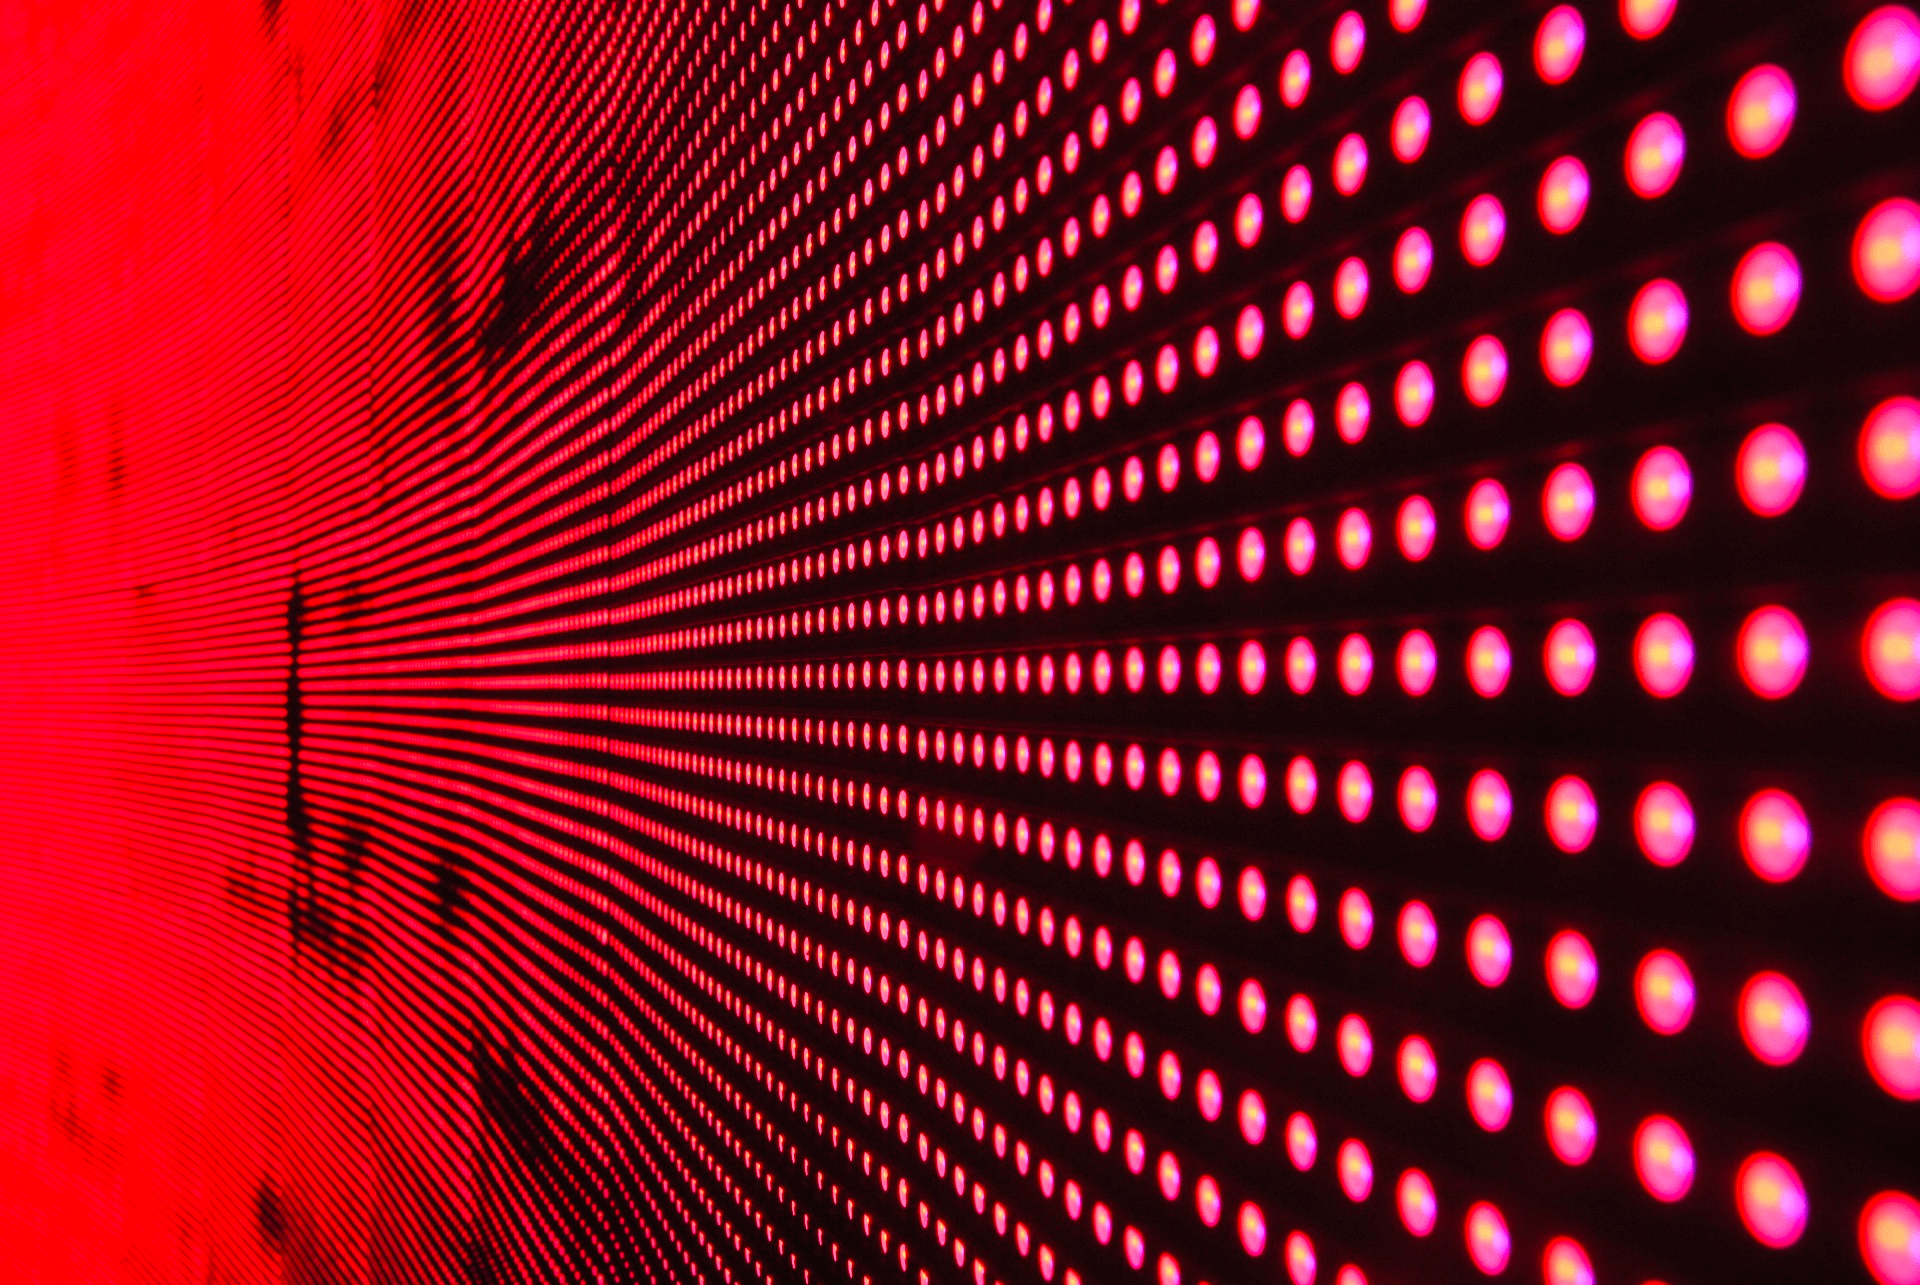 LED strip lights emit light (red visible light)